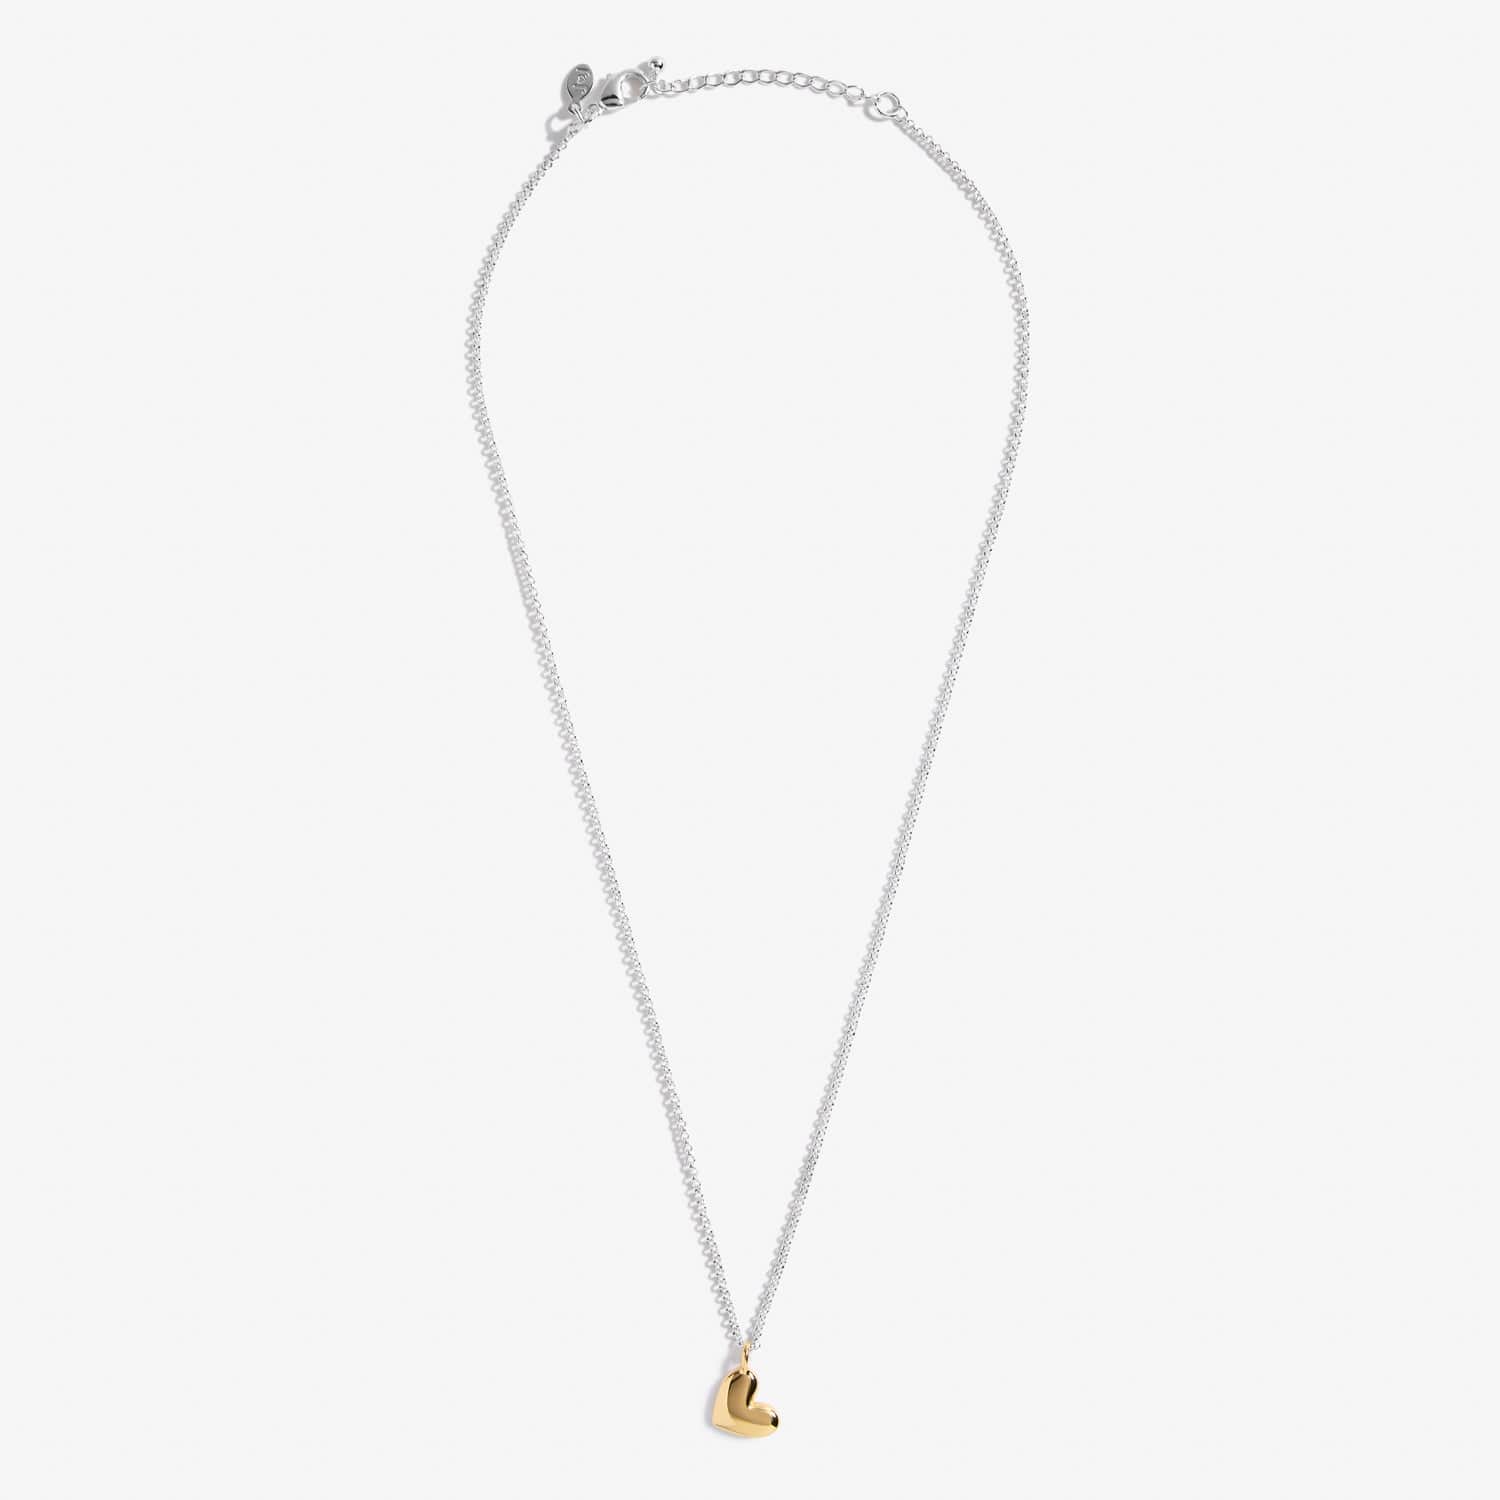 Joma Jewellery Necklace Joma Jewellery Necklace - A Little Heart of Gold